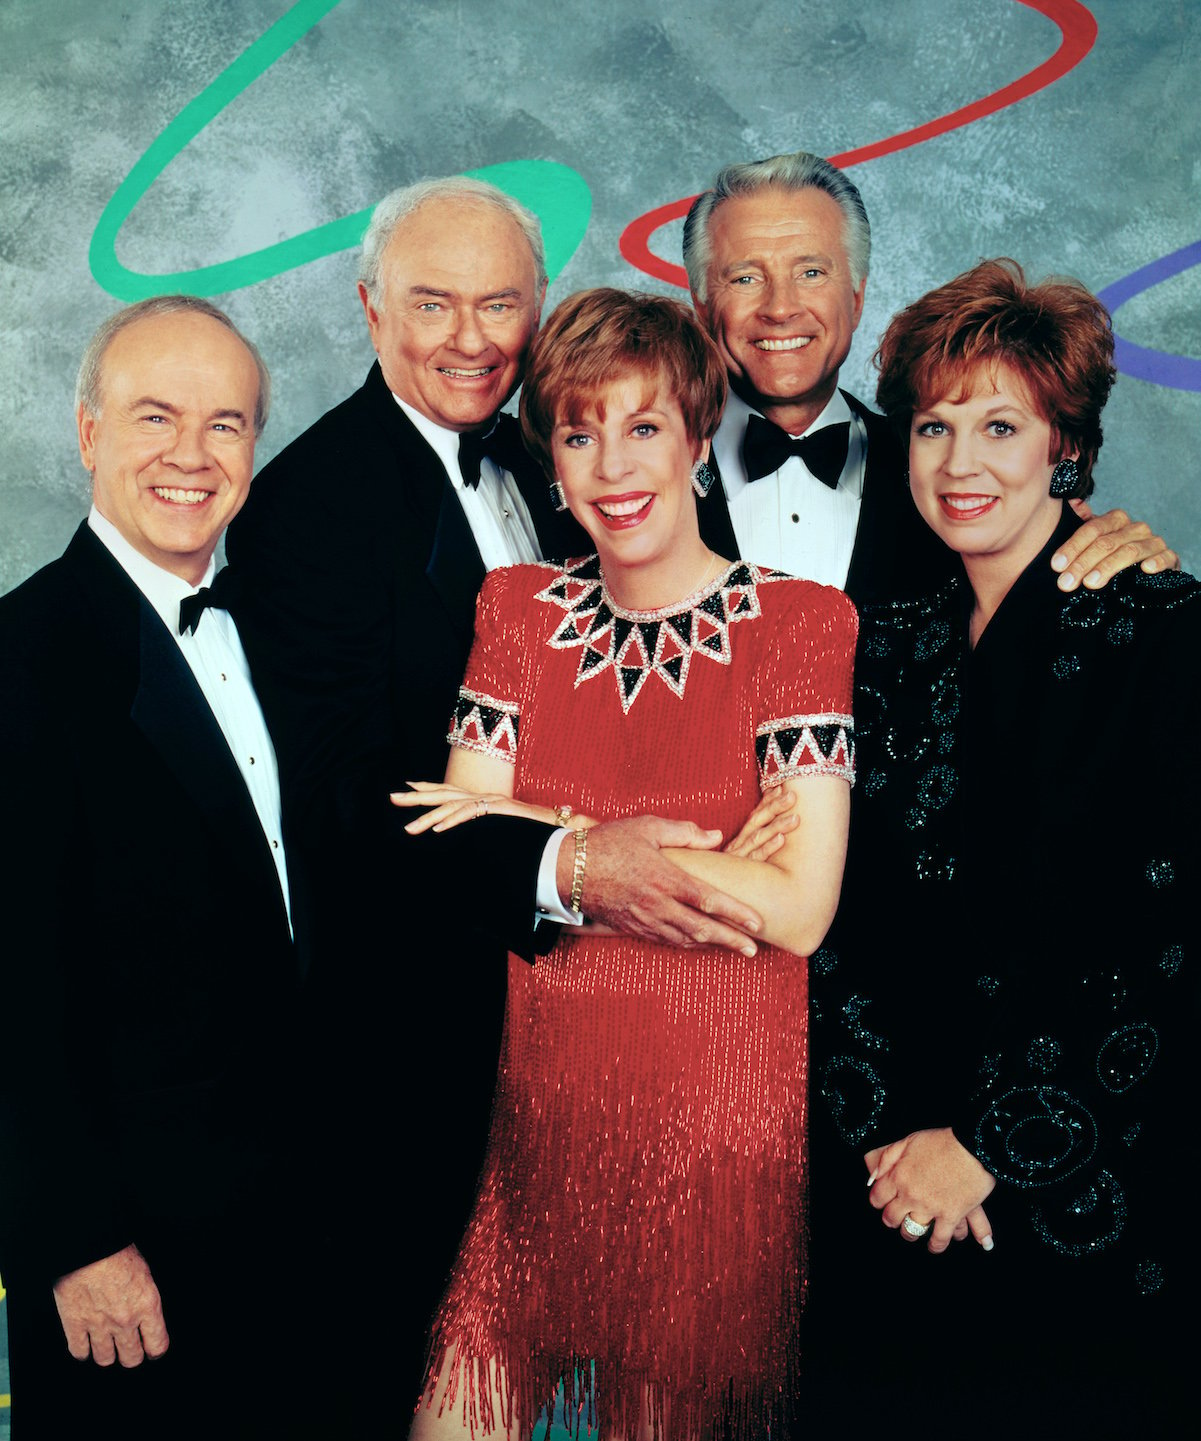 'The Carol Burnett Show' cast in 1993 